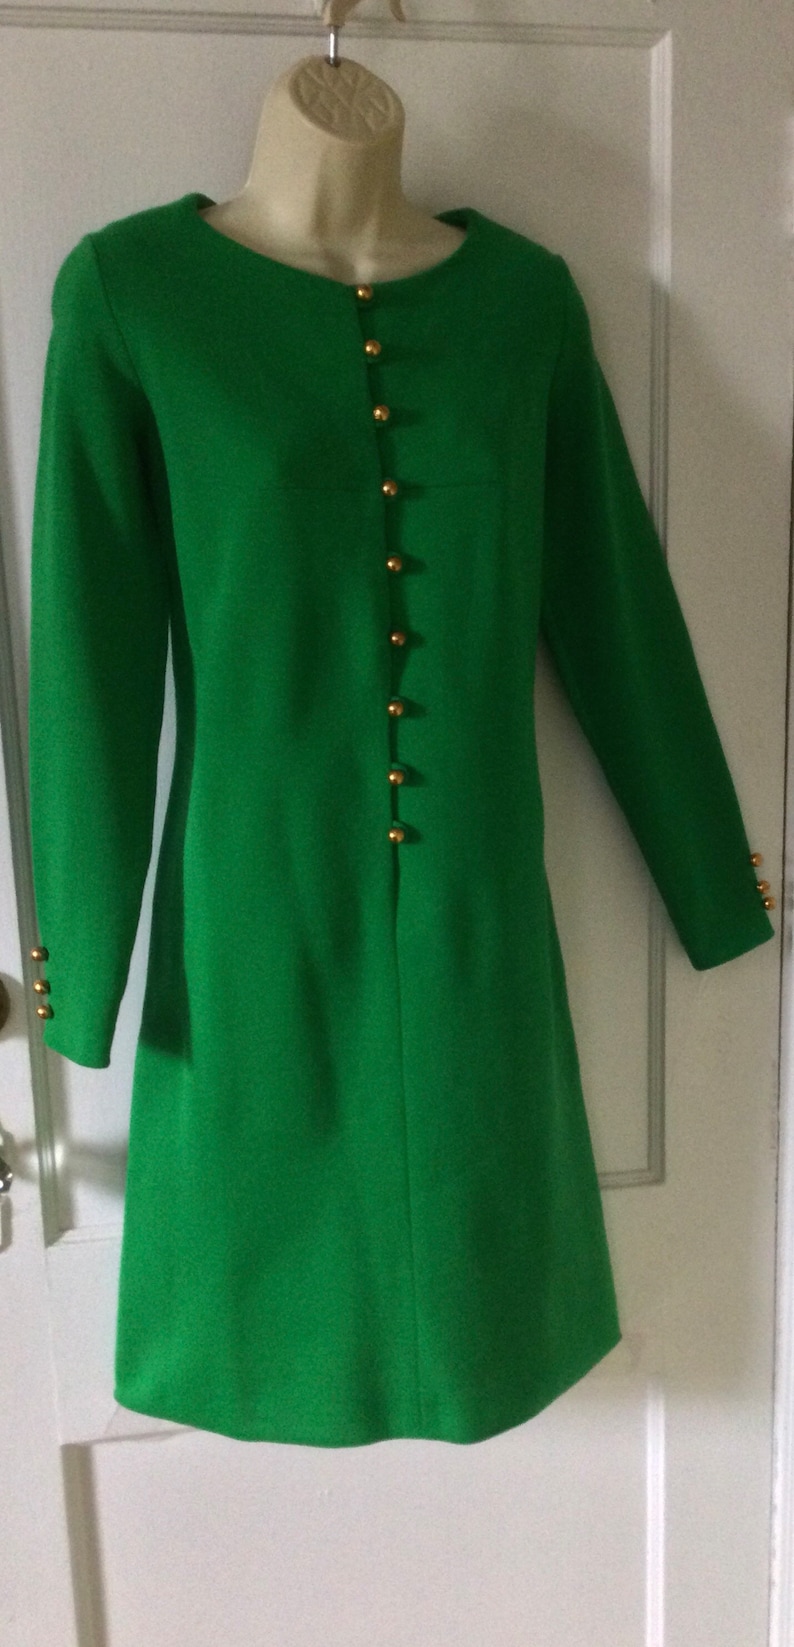 Bobbie Brooks Vintage Wool Dress Kelly-Green Double Knit Virgin Wool Long-Sleeve Gold Buttoned 1960s Vintage Shift Dress by BOBBIE BROOkS image 2